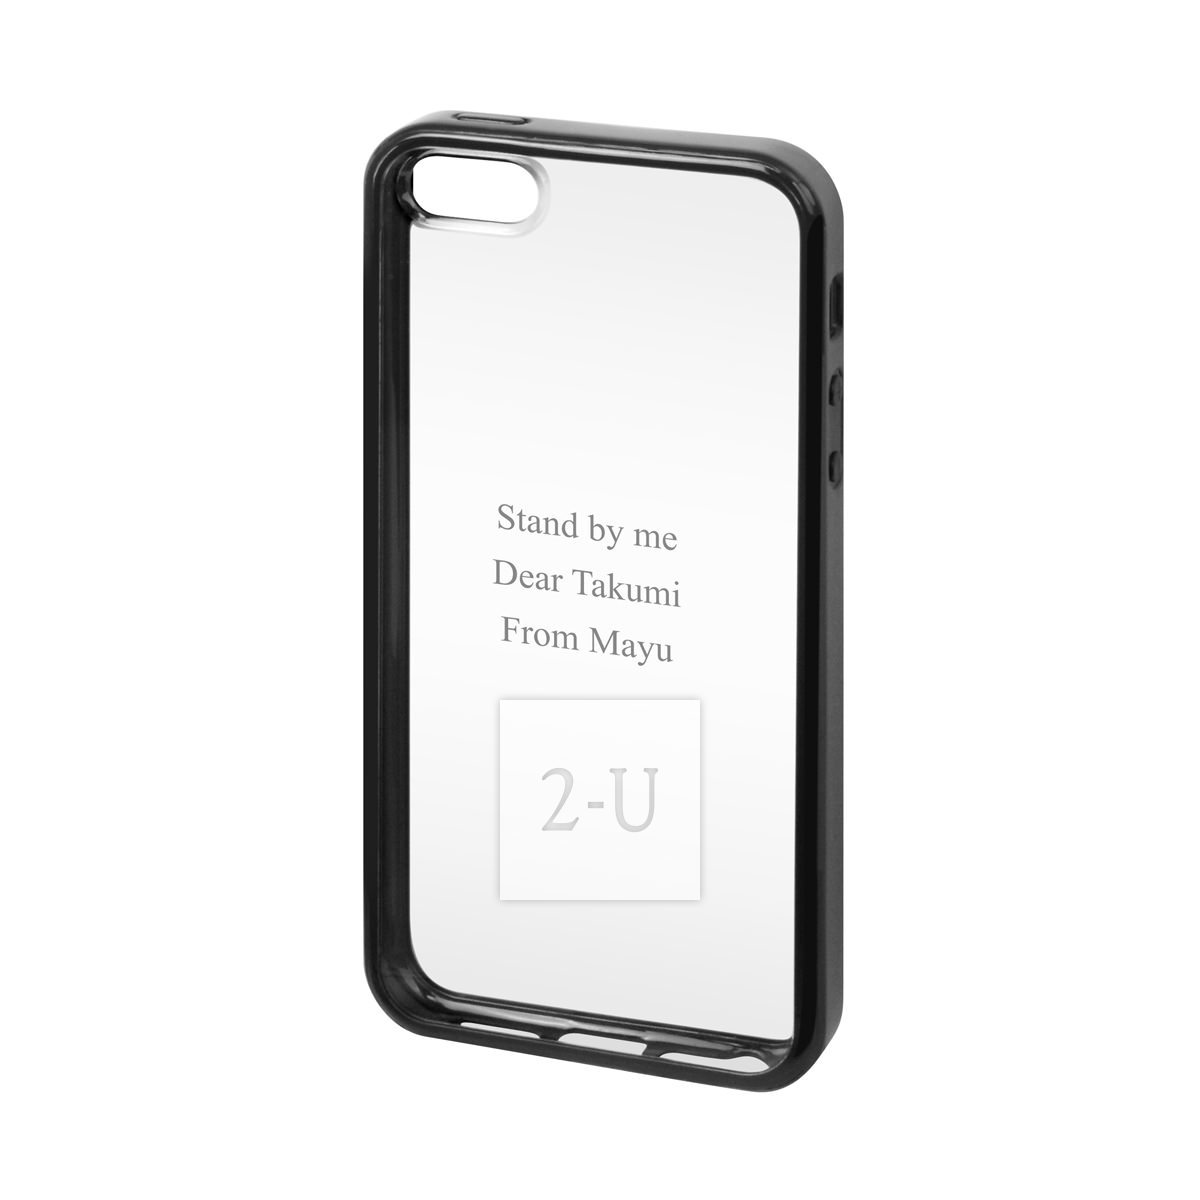 蘋果 Apple iPhone 5/5s 外殼手機包邊保護殼 黑色